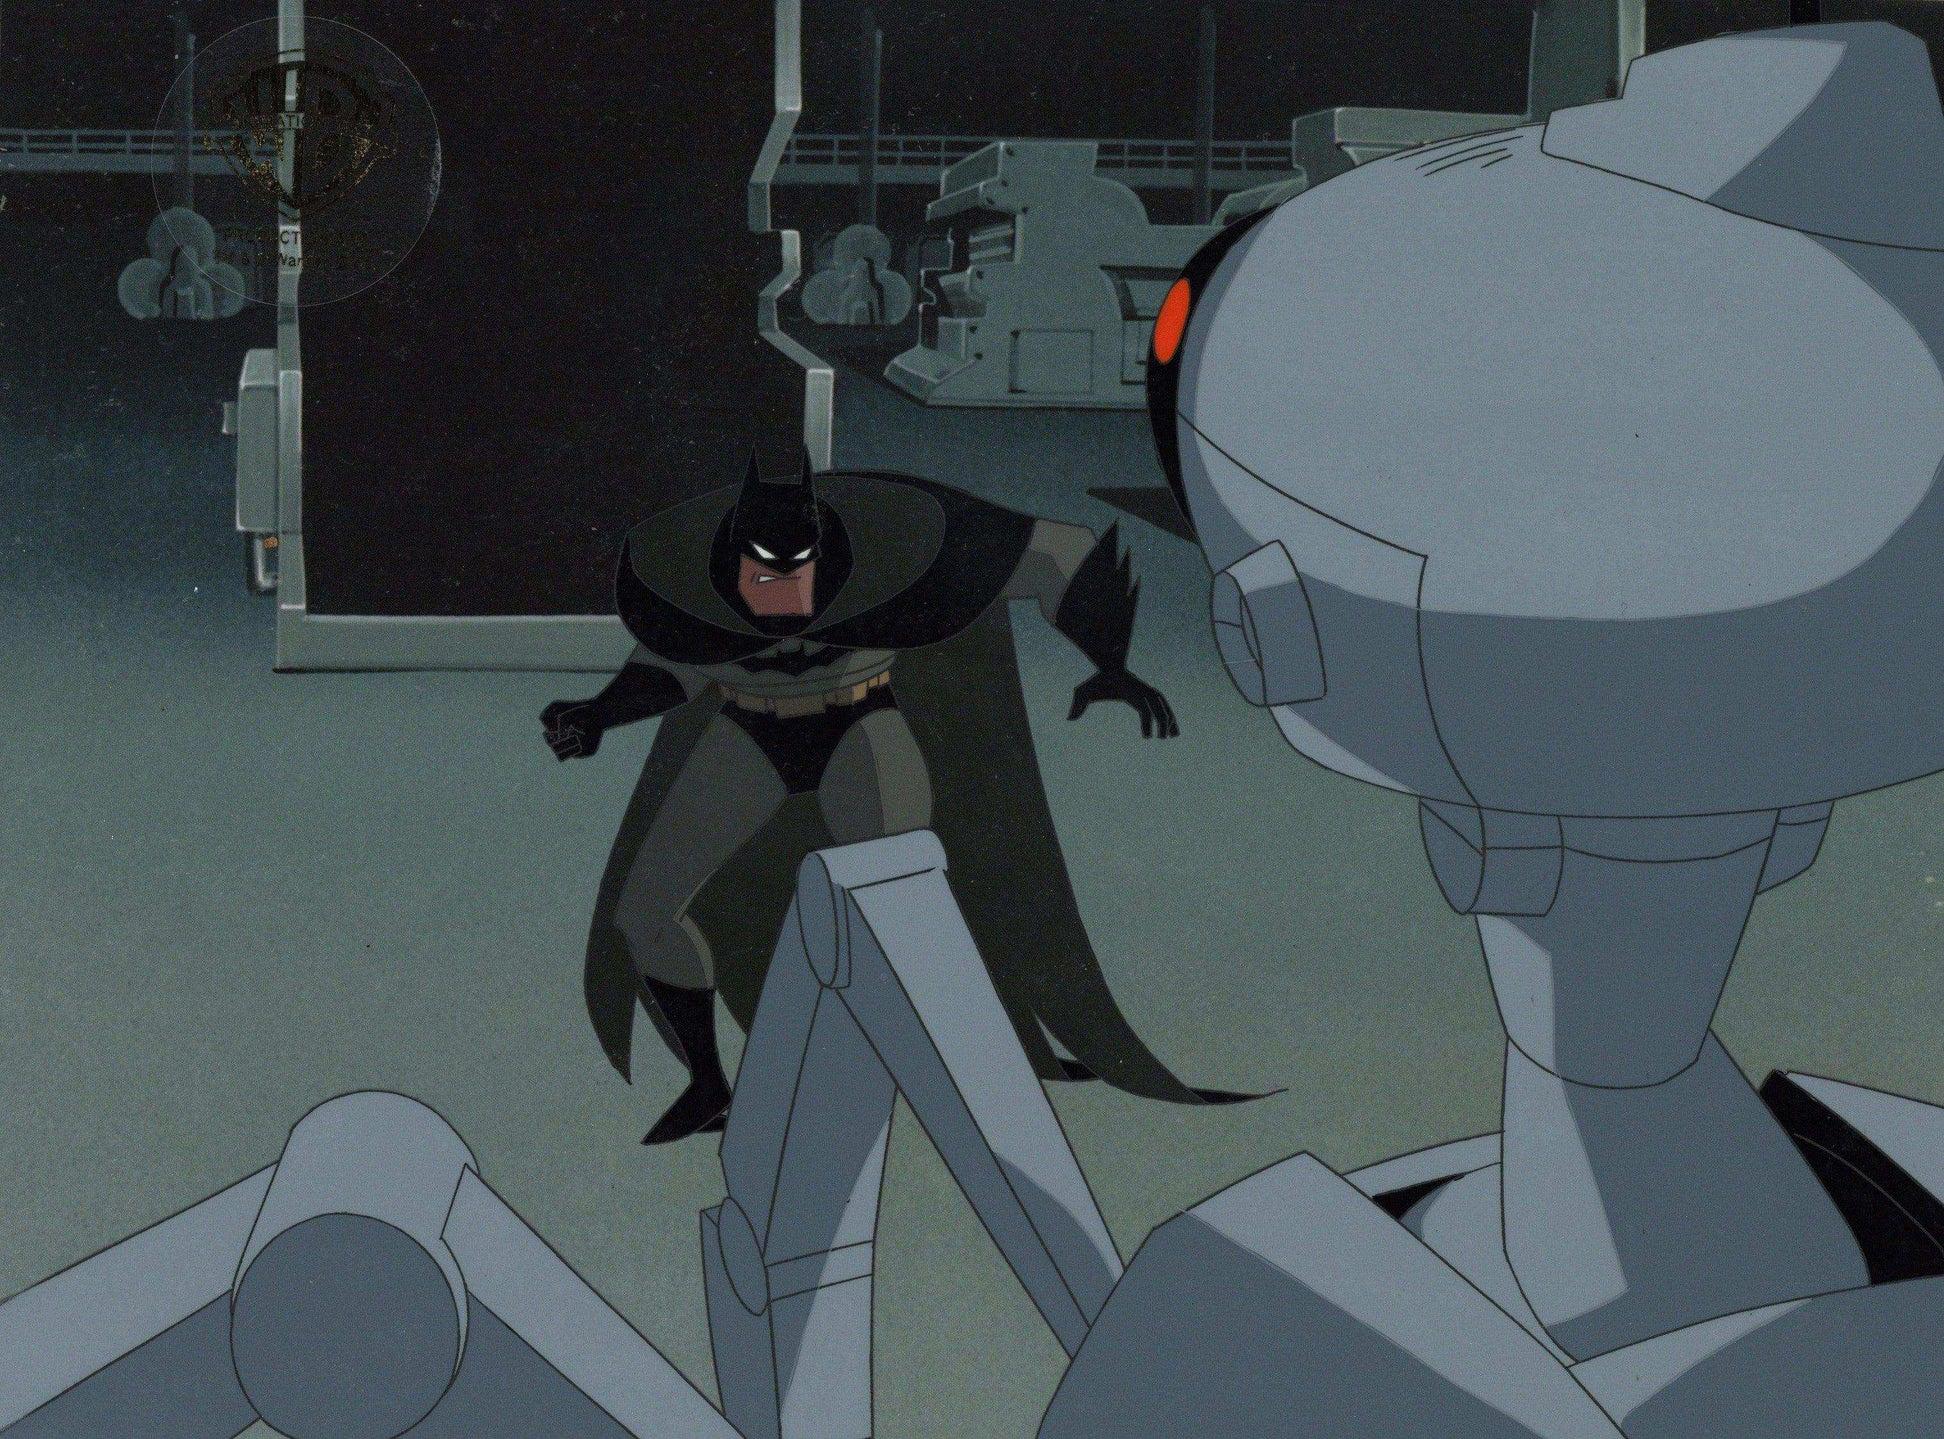 The New Batman Adventures Original Production Cel: Batman and Robot - Art by DC Comics Studio Artists